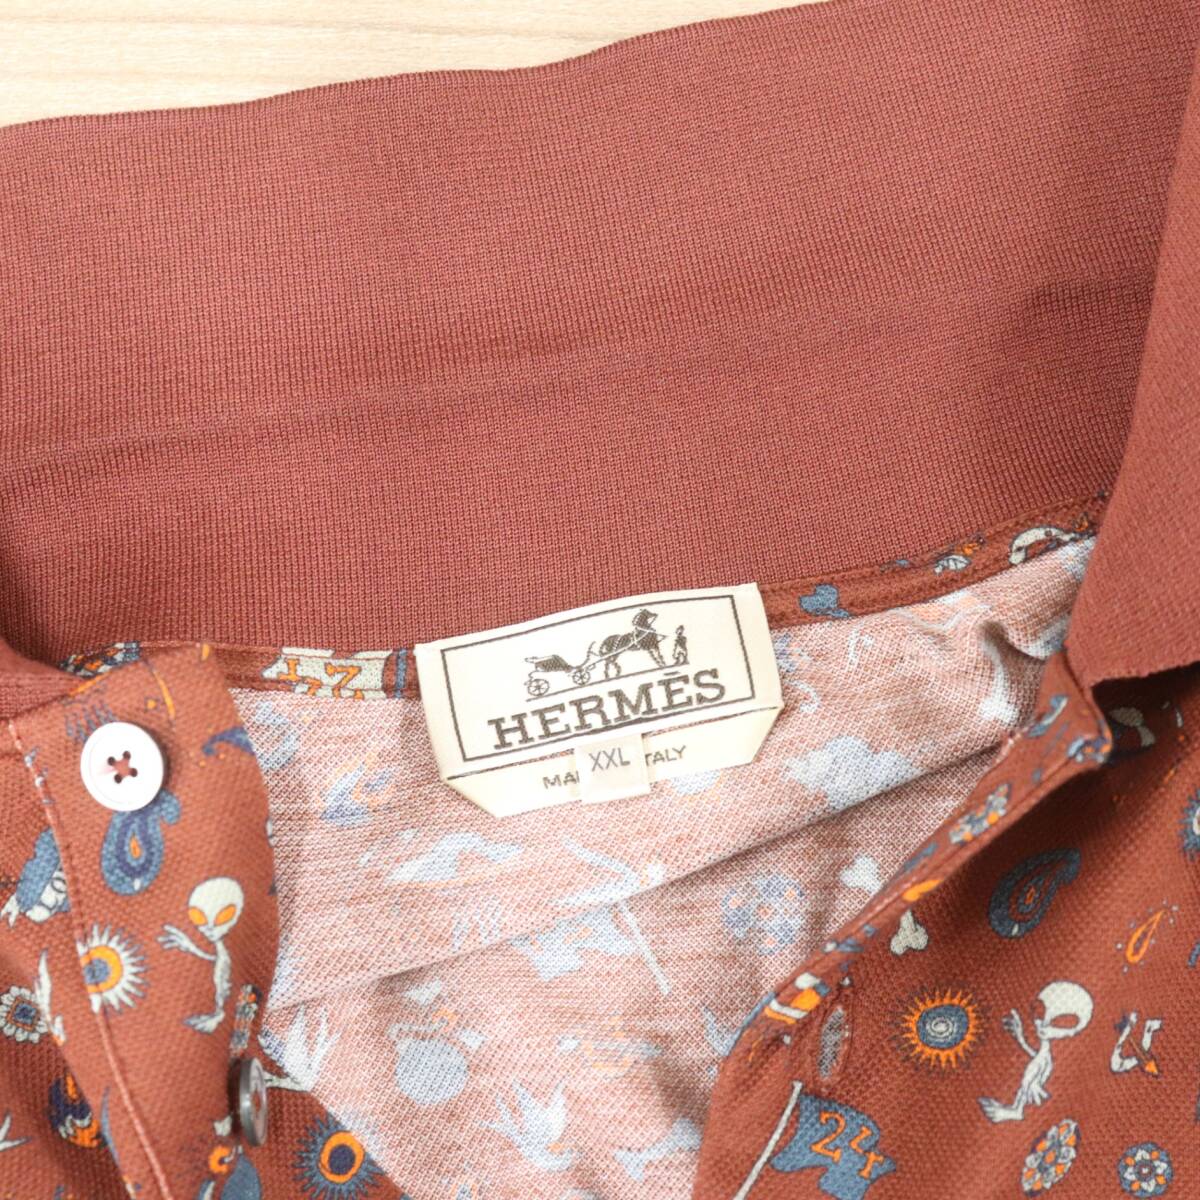 ITRAJU99EWFG быстрое решение подлинный товар внутренний стандартный HERMES Hermes рубашка-поло размер XXL мужской общий рисунок tops короткий рукав бордо хлопок хлопок 